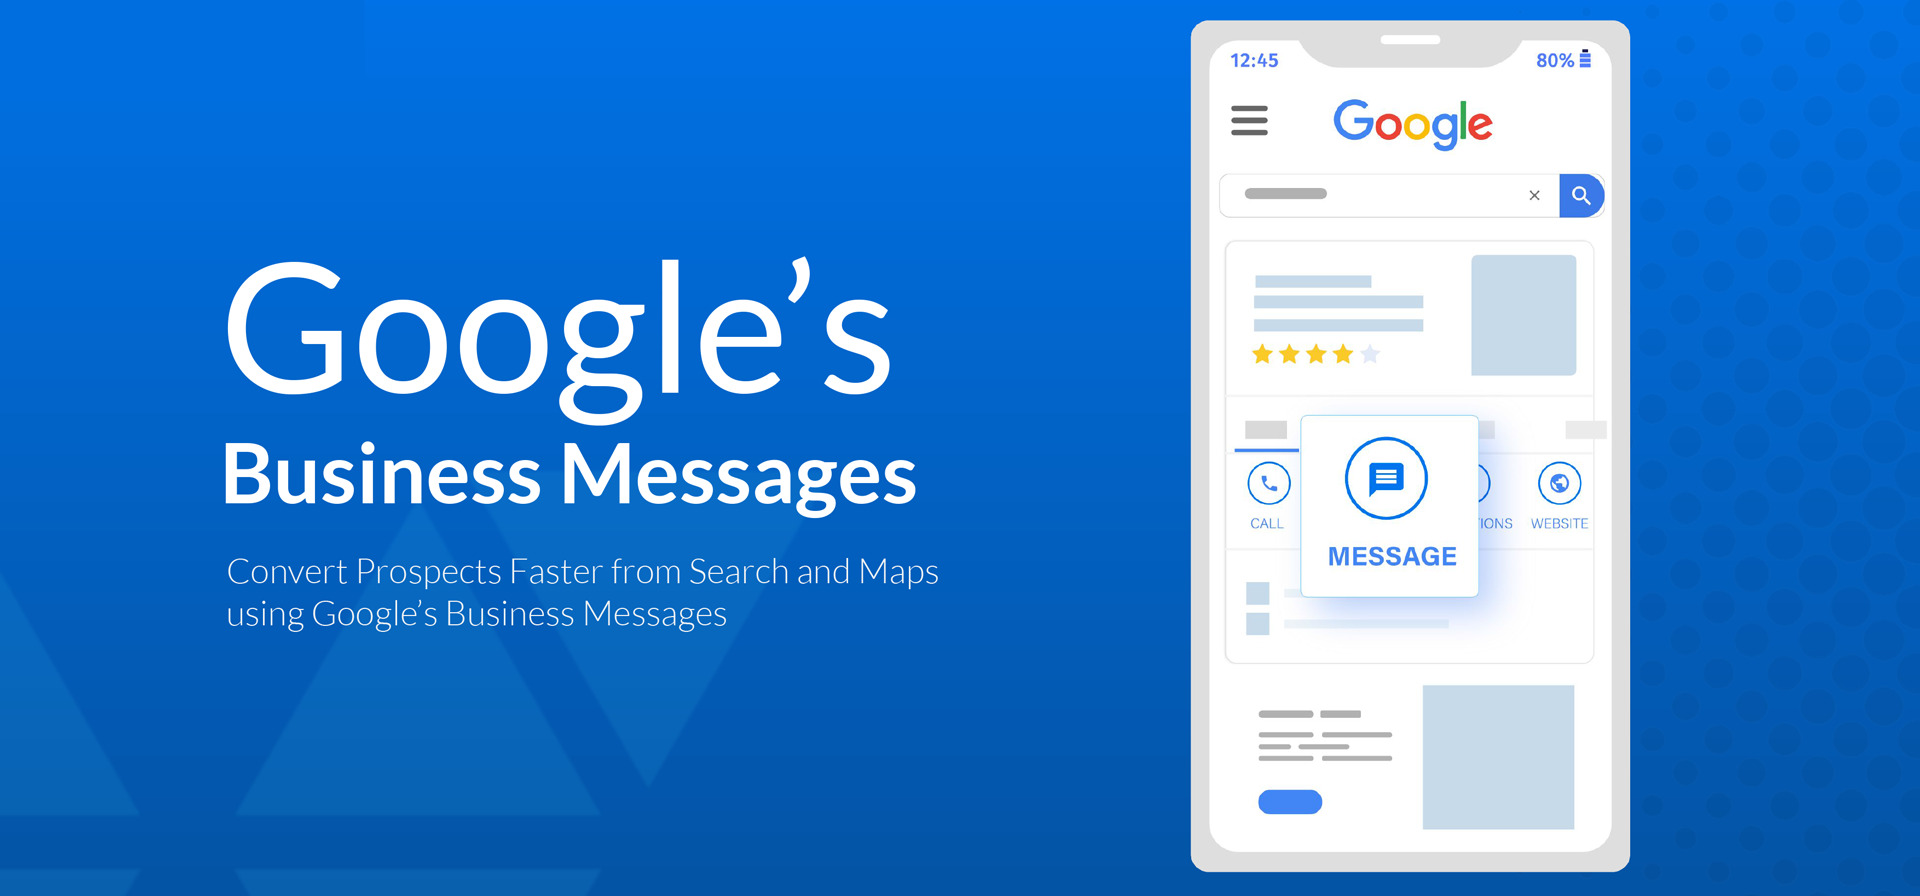 Google schaltet Google Business Messaging ab